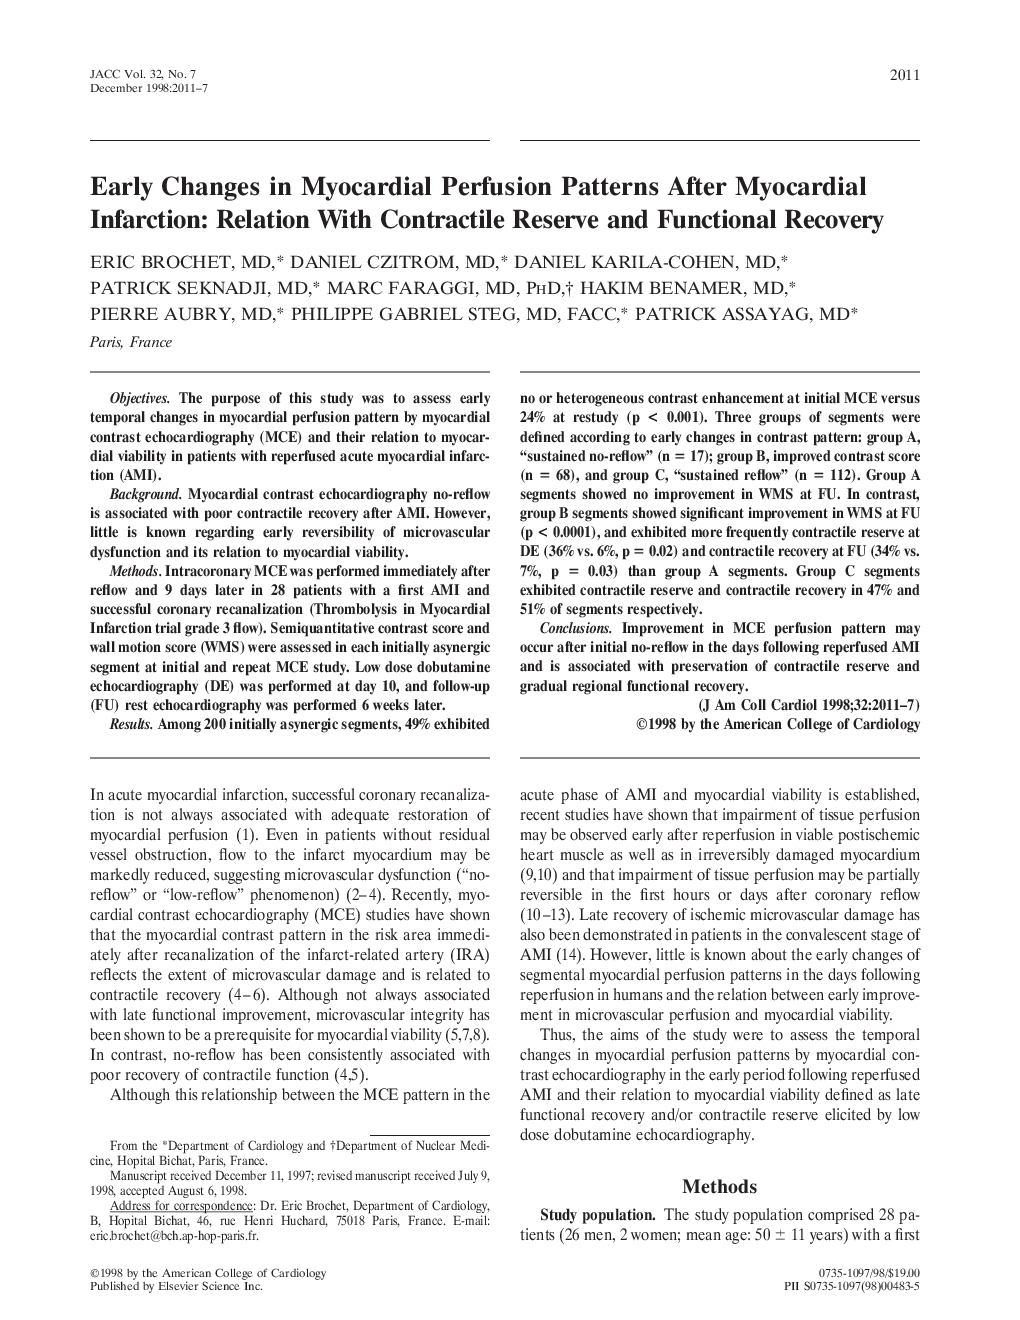 تغییرات اولیه در الگوهای پرفیوژن میوکارد پس از انفارکتوس میوکارد: رابطه با ذخیره انقباضی و بهبود عملکرد